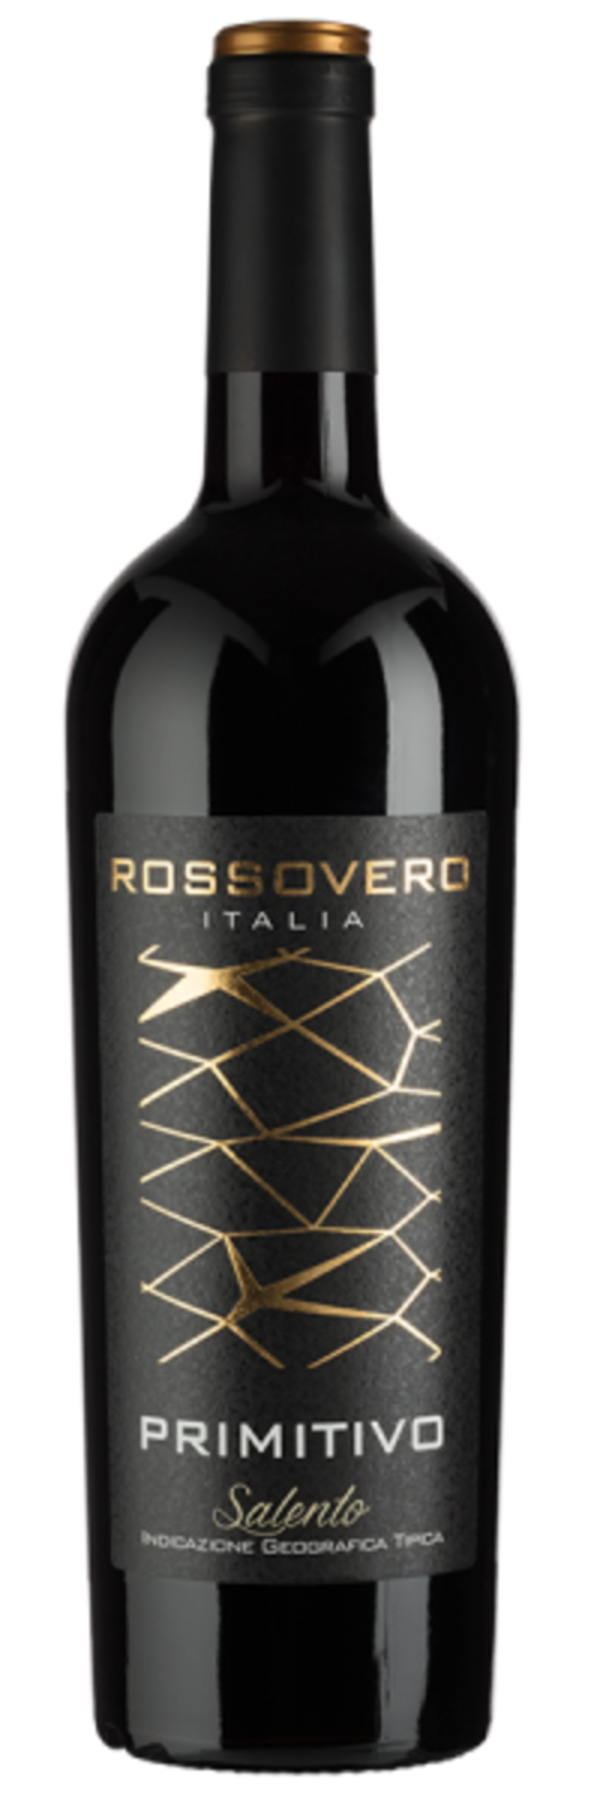 Bild 1 von Rossovero Primitivo Salento - 2021 - Angelo Rocca - Italienischer Rotwein